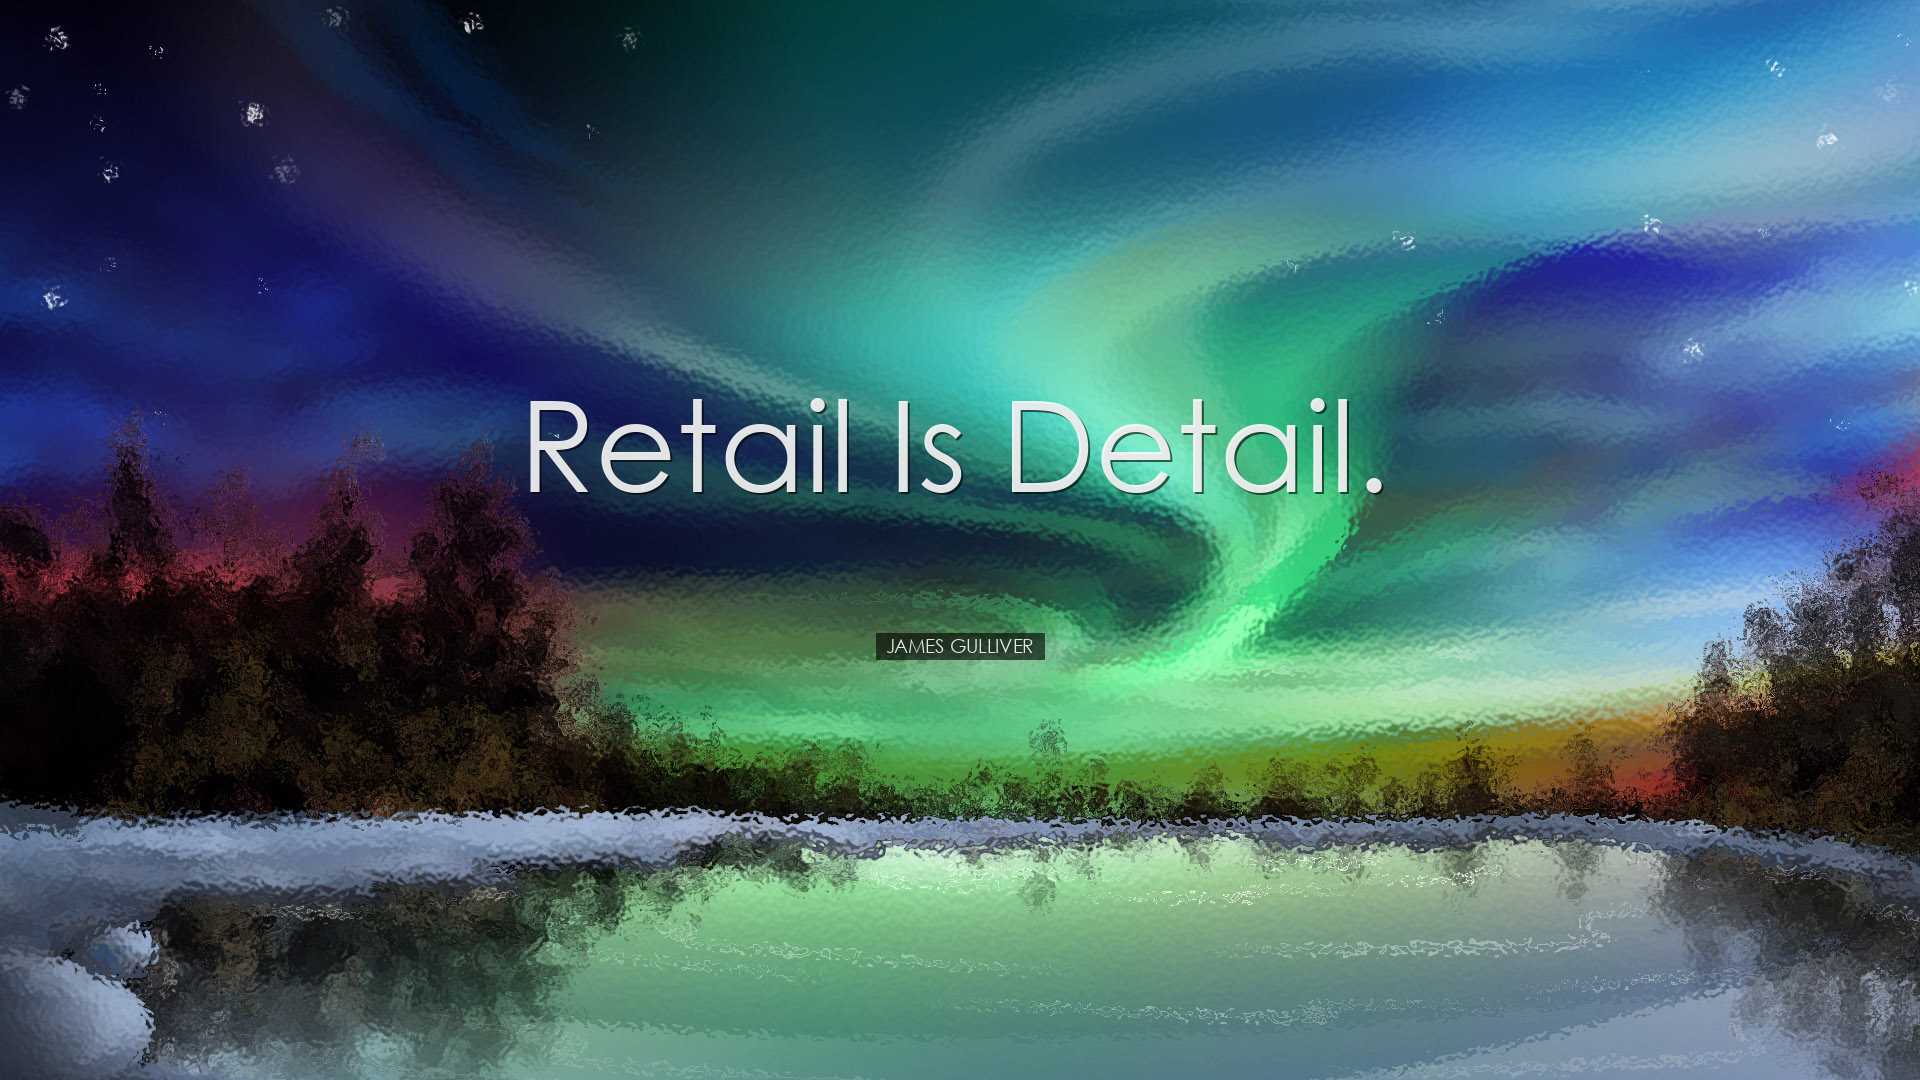 Retail is detail. - James Gulliver